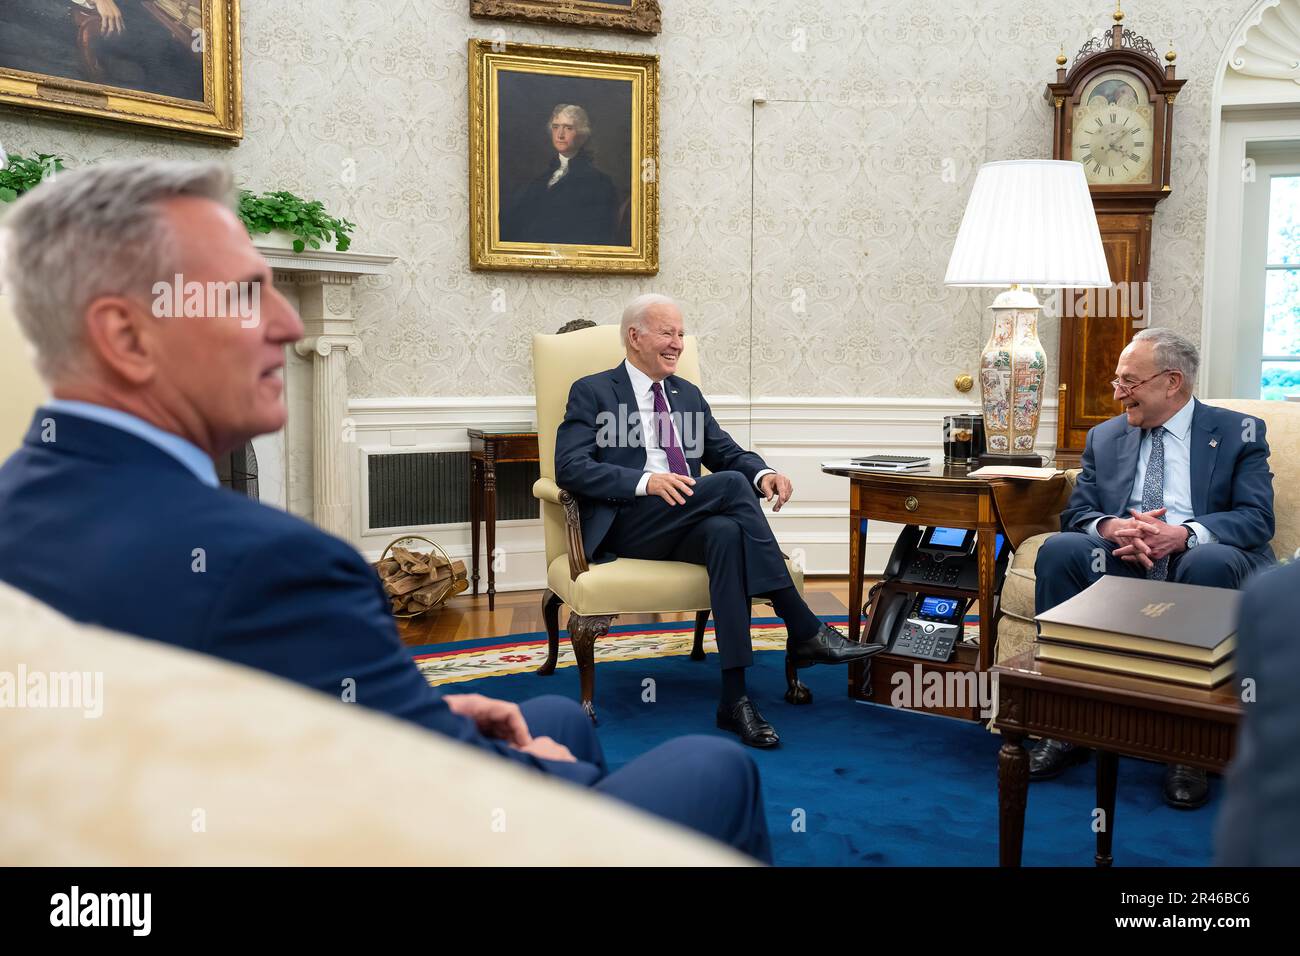 Le président Joe Biden rencontre le leader de la majorité au Sénat Chuck Schumer (D-NY), le leader de la minorité Mitch McConnell (R-KY), le Président de la Chambre Kevin McCarthy (R-CA) et le leader de la minorité de la Chambre Hakeem Jeffries (D-NY) pour discuter du plafond de la dette, mardi, 9 mai 2023, dans le Bureau ovale de la Maison Blanche. (Photo officielle de la Maison Blanche par Adam Schultz) Banque D'Images